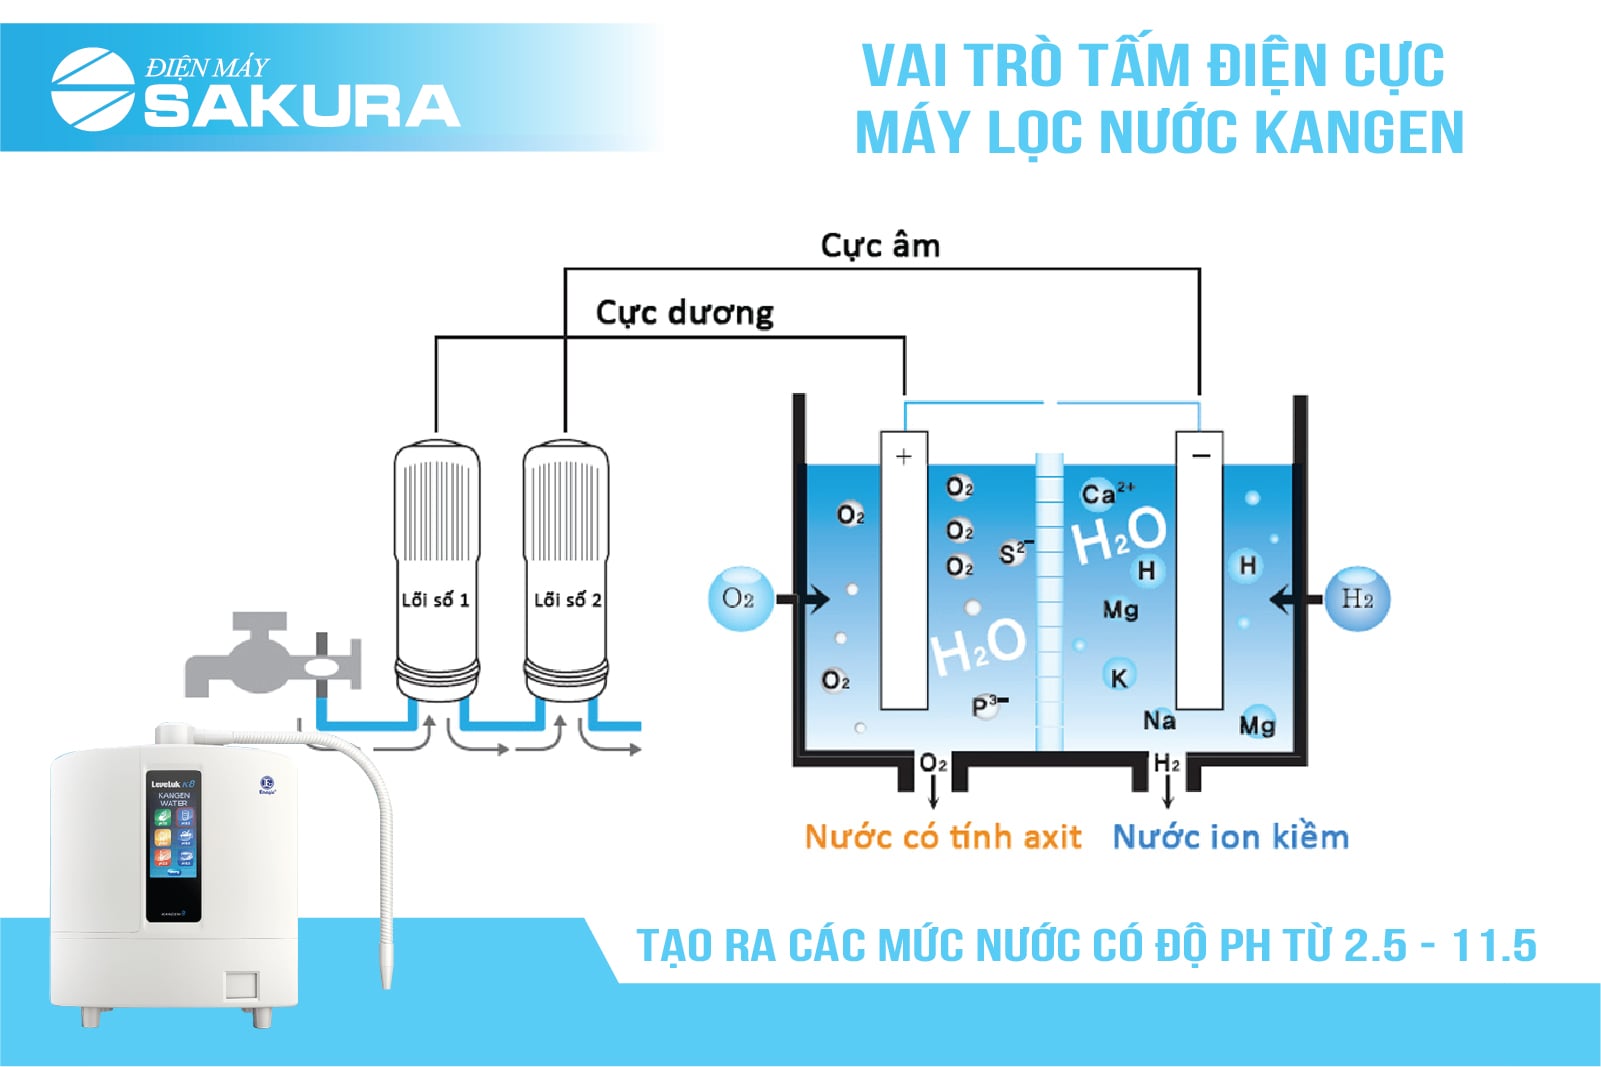 Vai trò tấm điện cực máy lọc nước Kangen